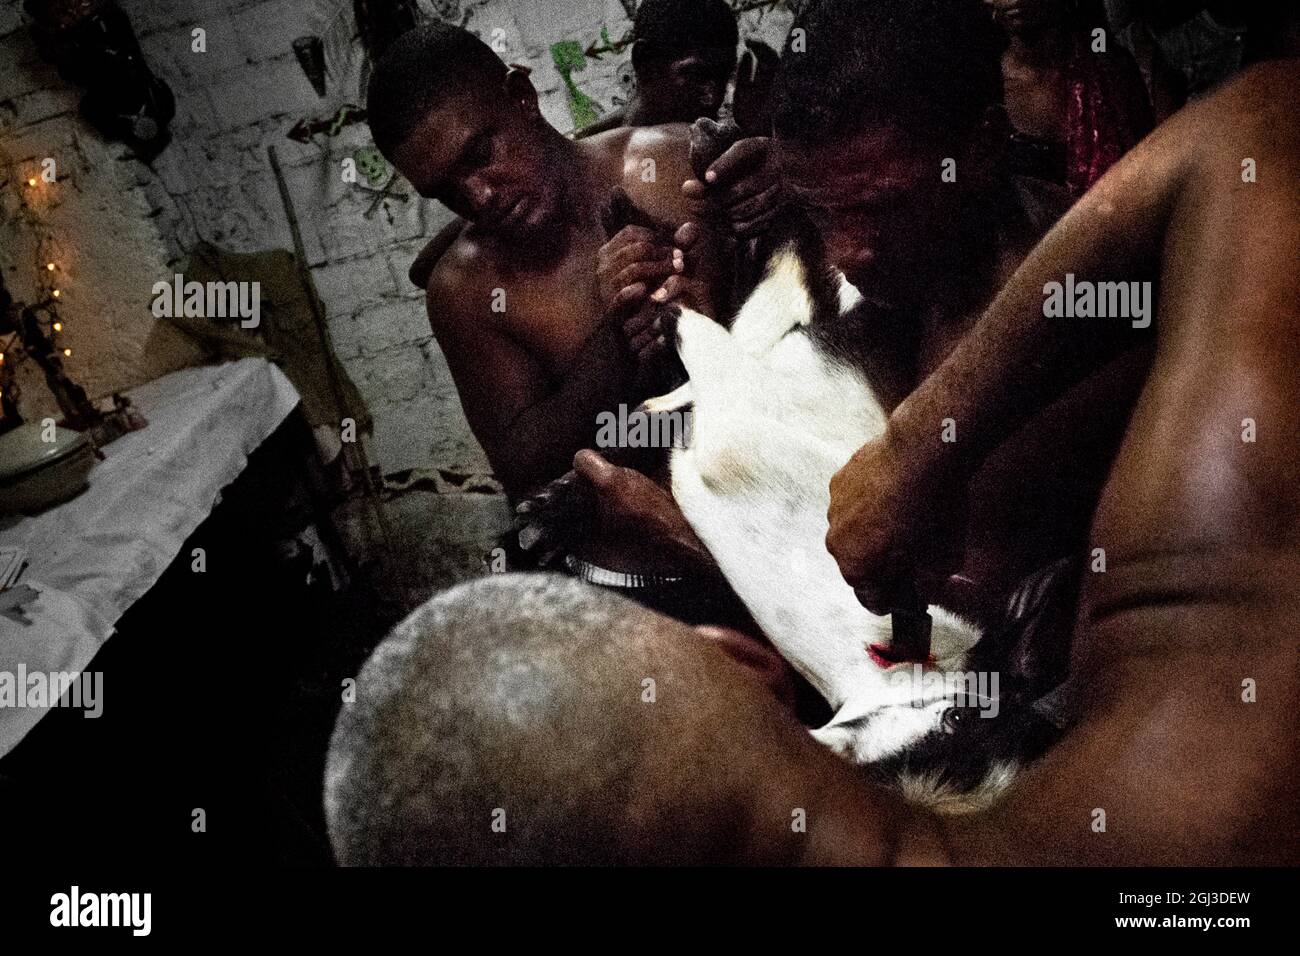 Un uomo cubano, il sacerdote religioso Palo, taglia la gola di una capra durante il rituale del sacrificio a Santiago de Cuba, Cuba, 1 agosto 2009. Foto Stock